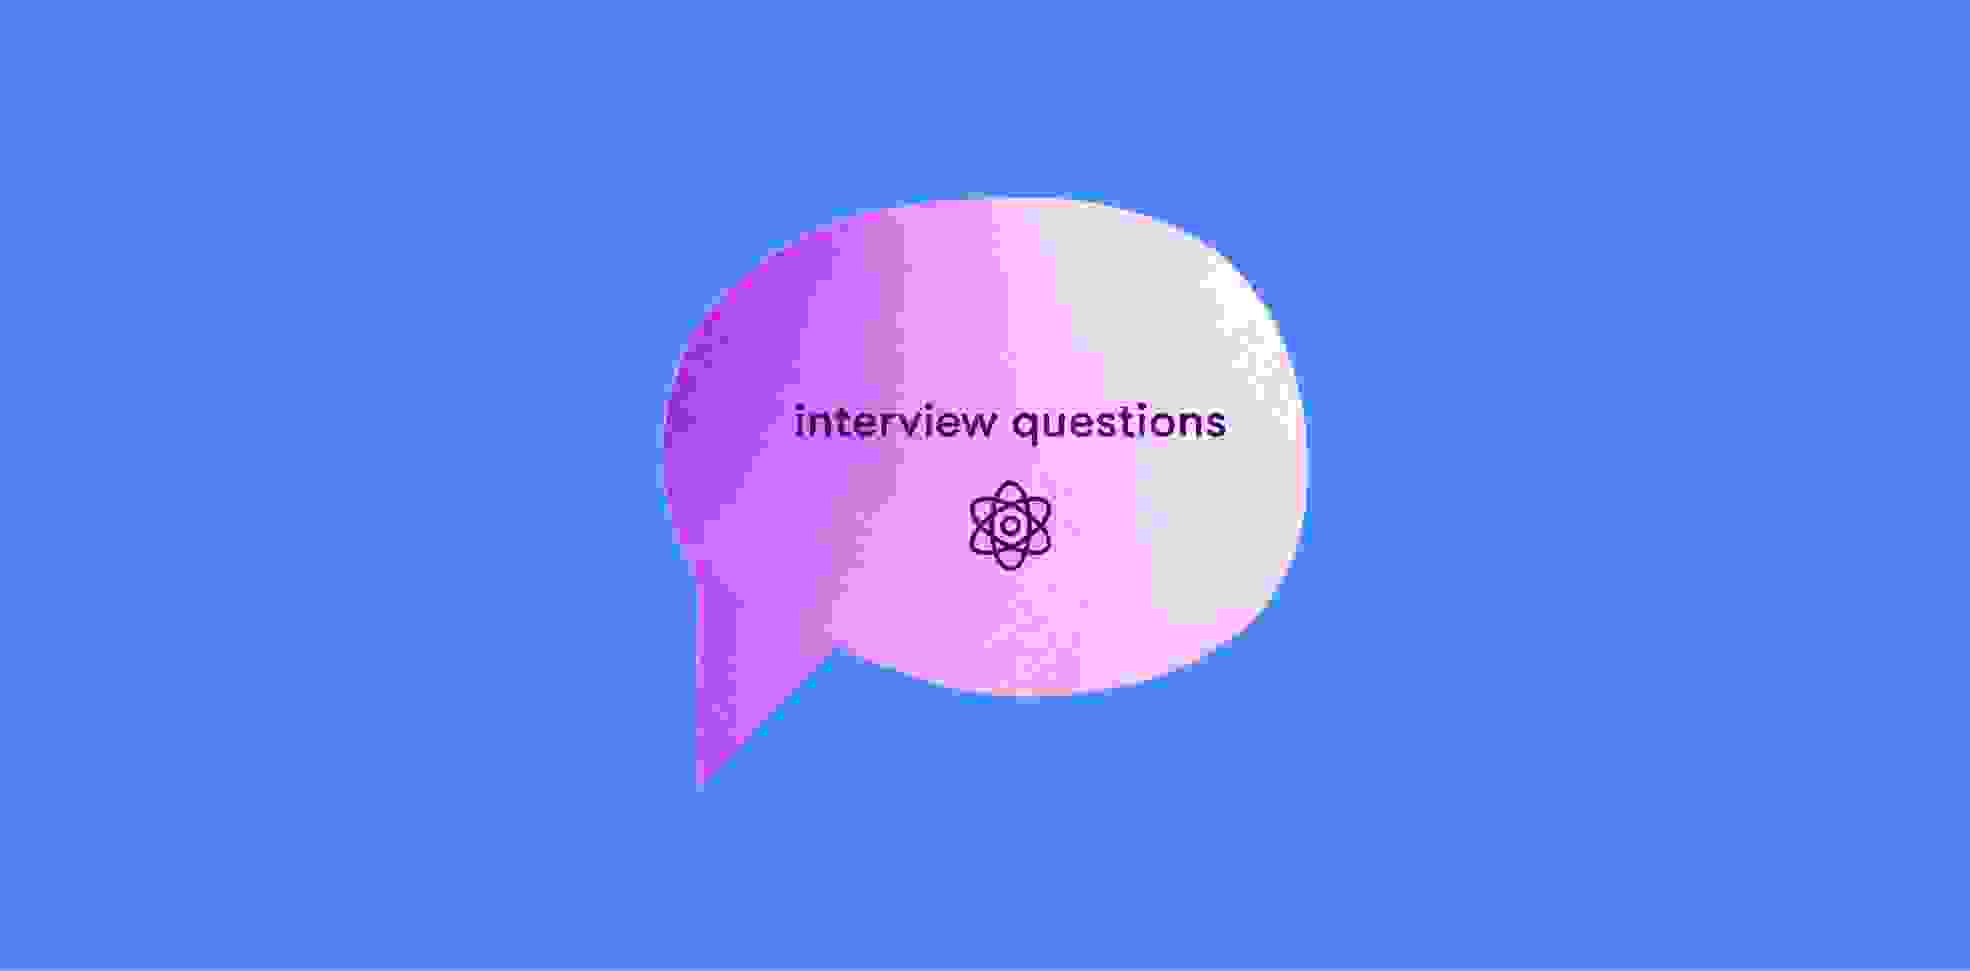 Nube de discurso rosa con palabras preguntas de entrevista